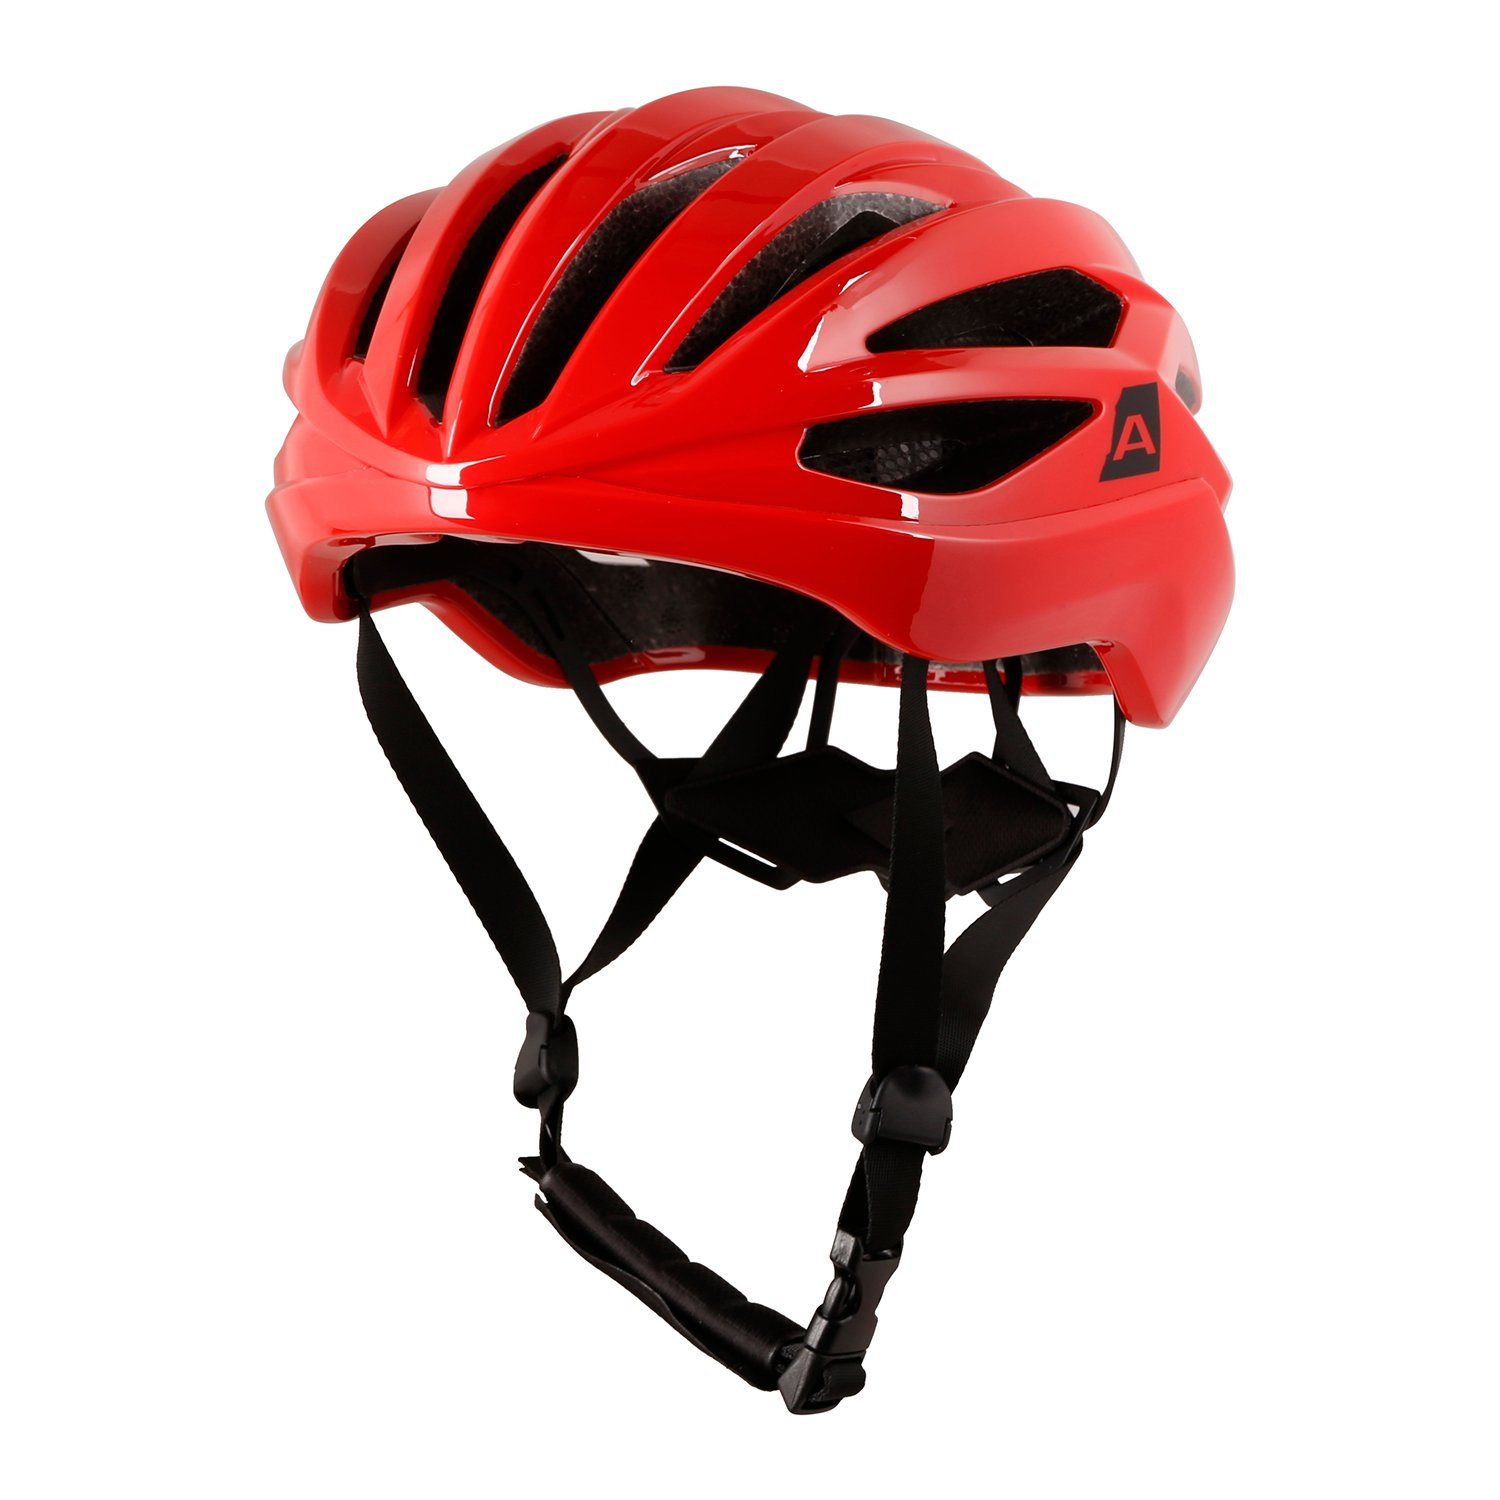 Cycling helmet ap AP FADRE orange.com